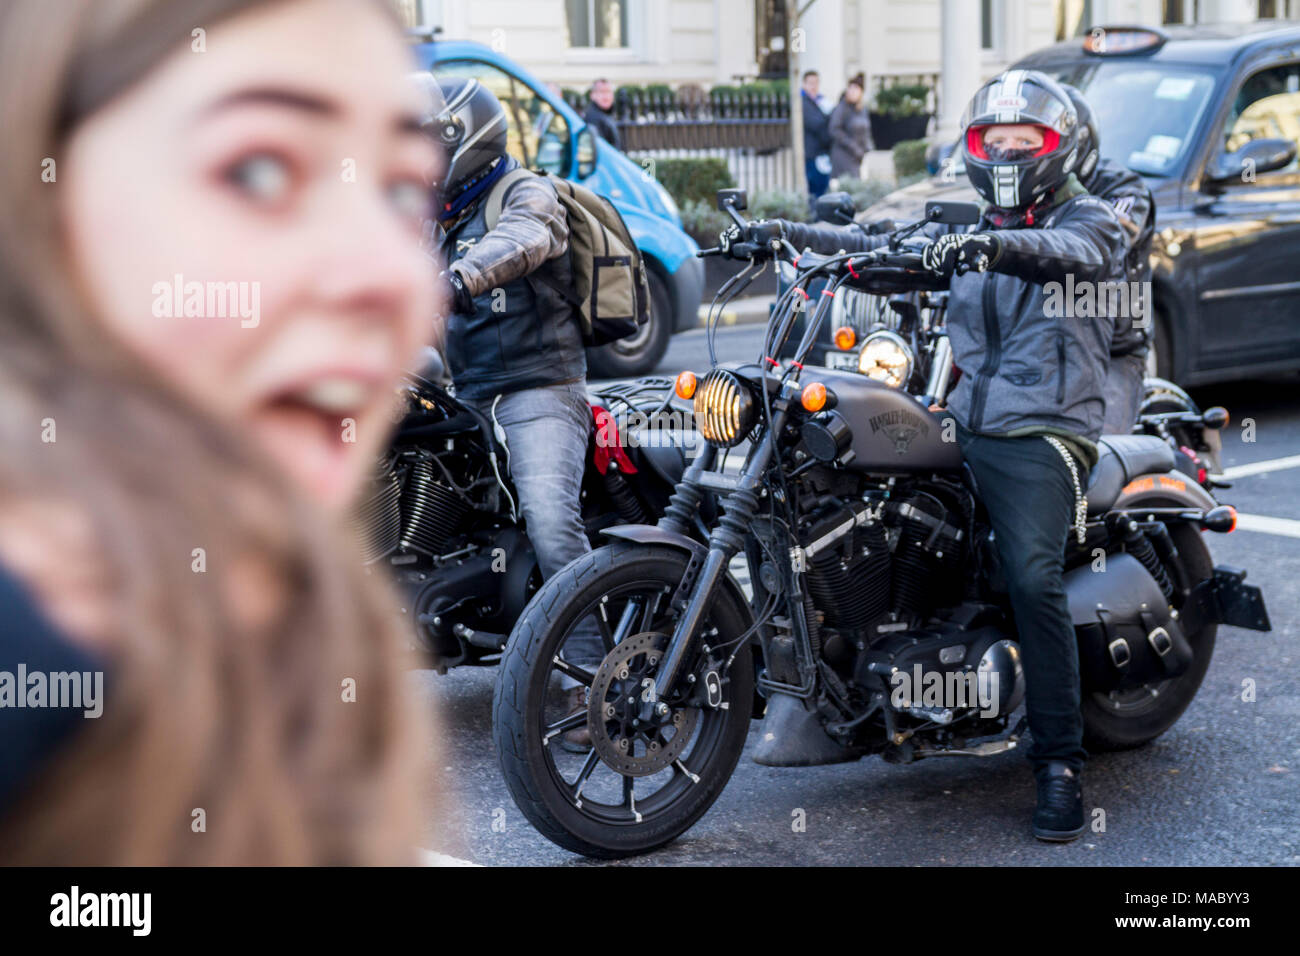 Groupe de motards équitation Harley Davidson Bikes,motos, motos, vélo, piste lads lads sur motherbikes London UK surprise surprise choc Banque D'Images